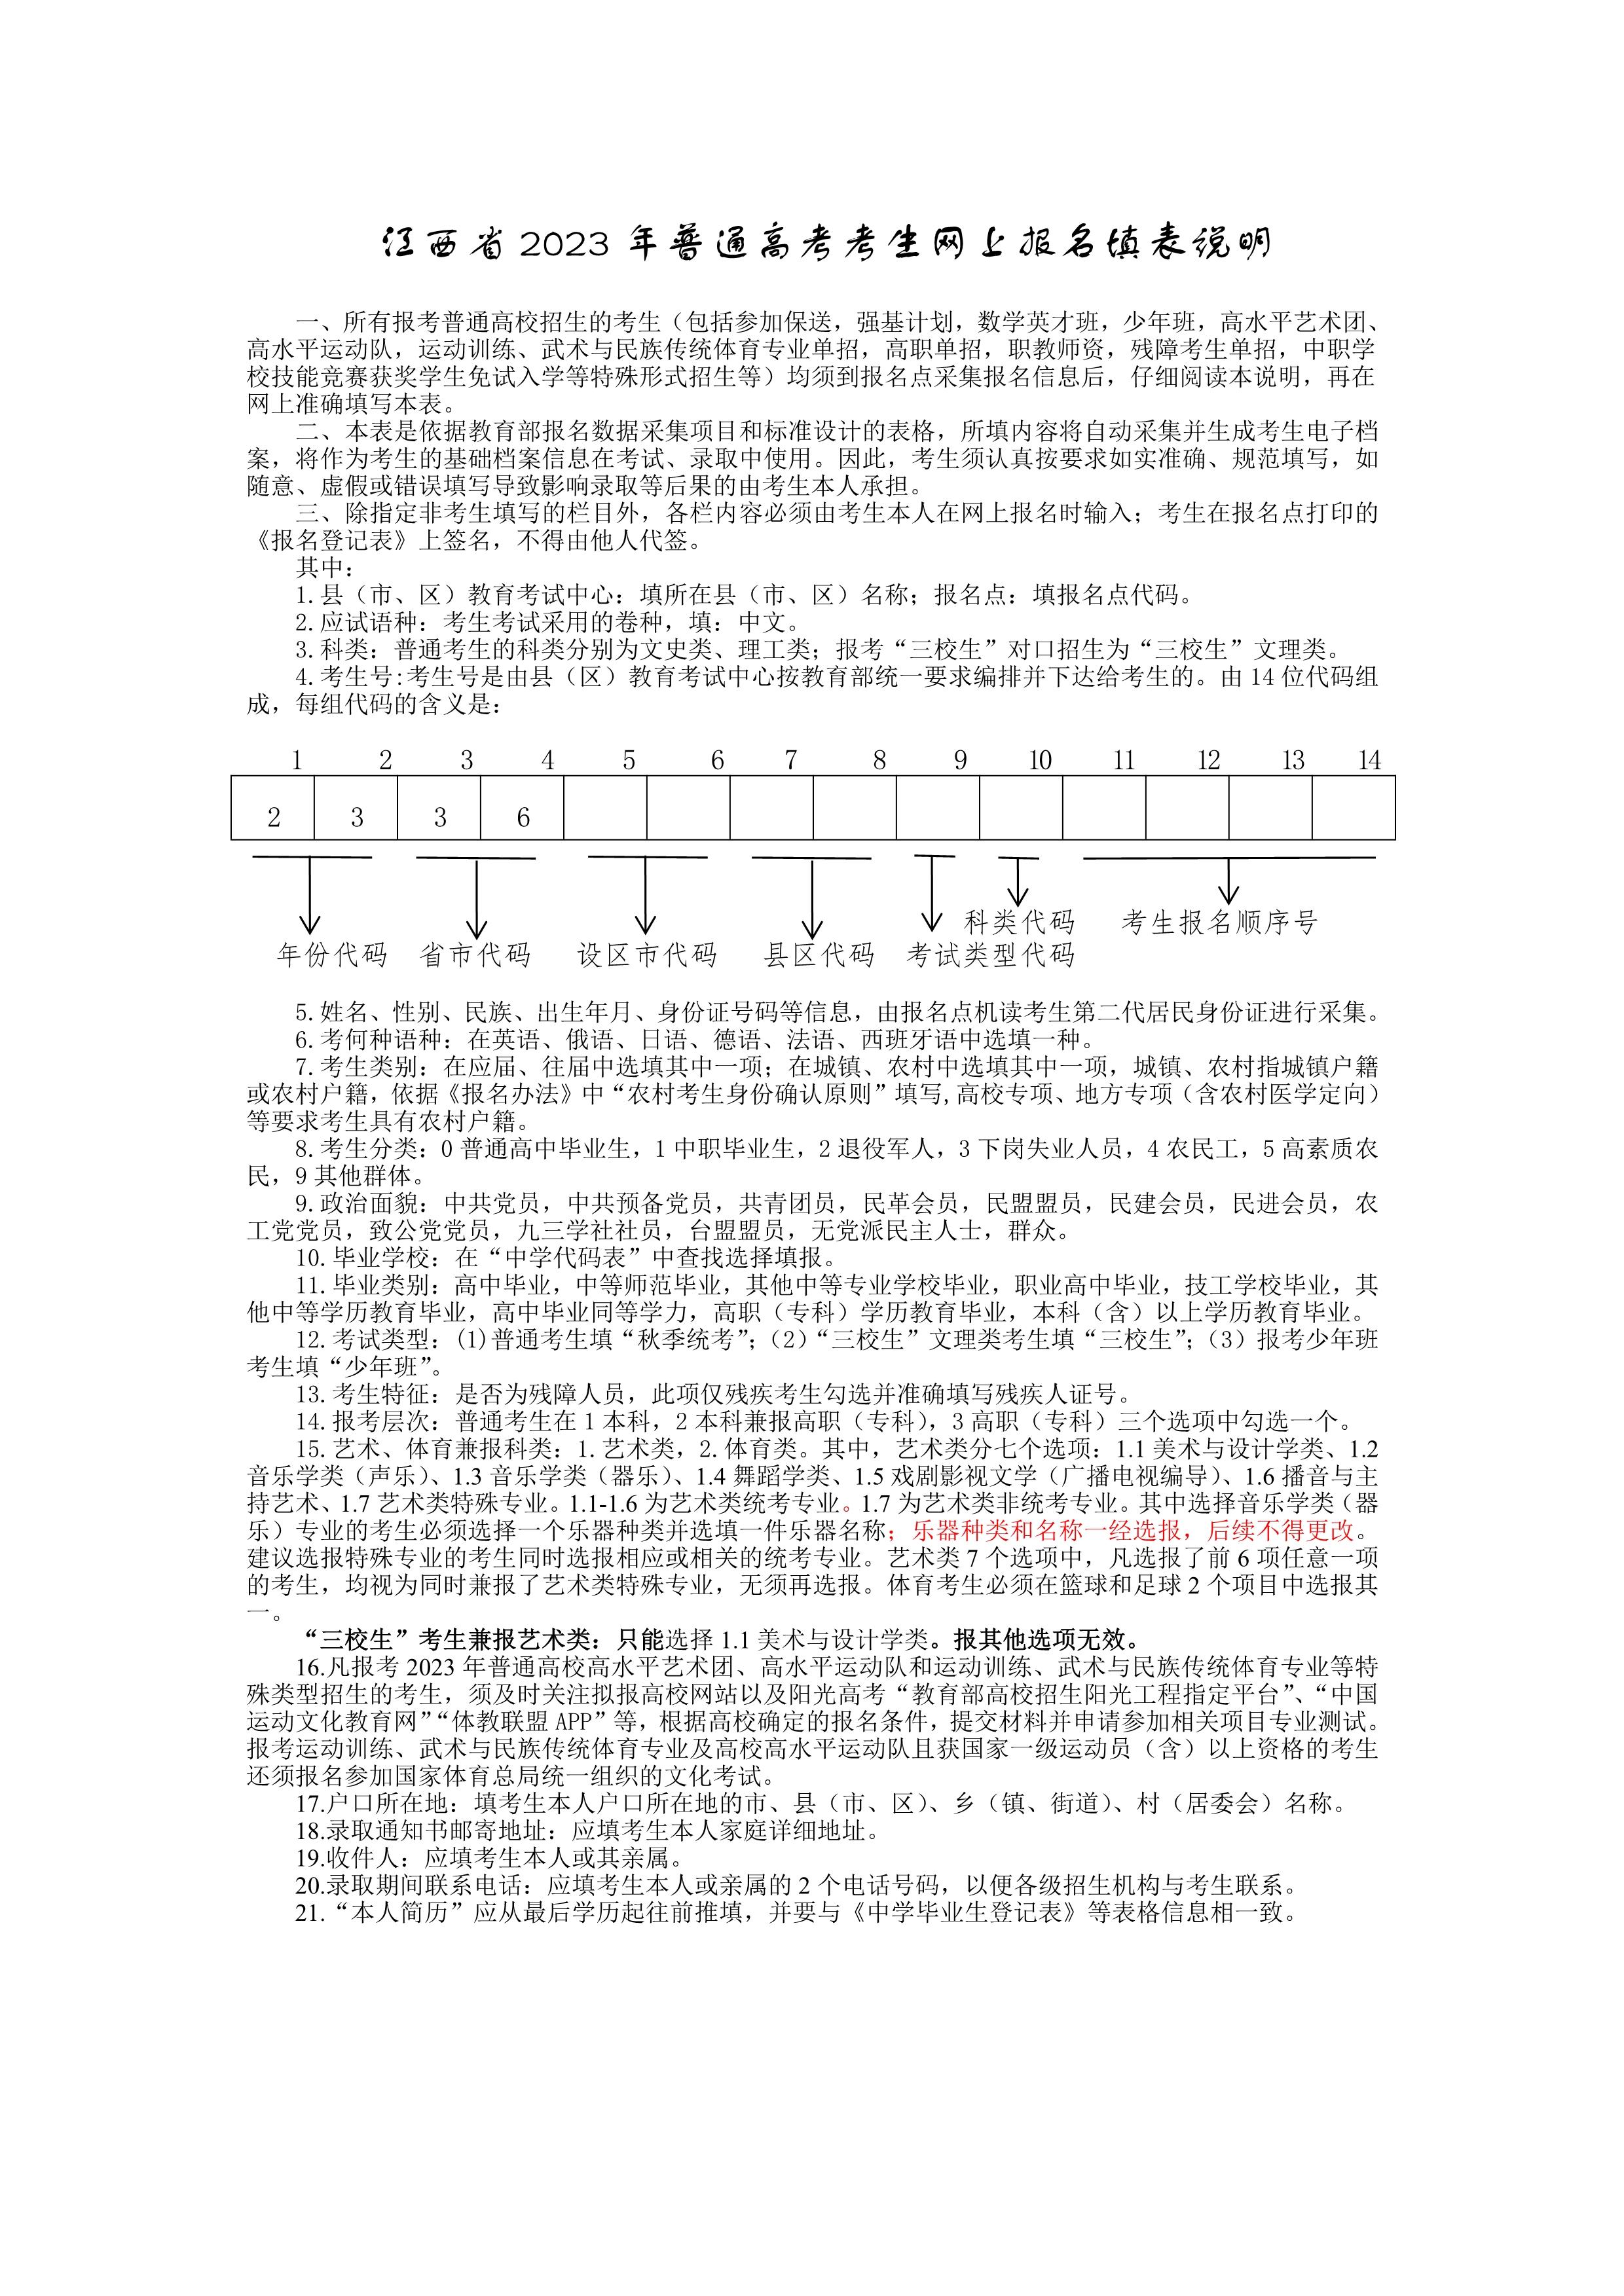 2.江西省2023年普通高考报名登记表_2.jpg